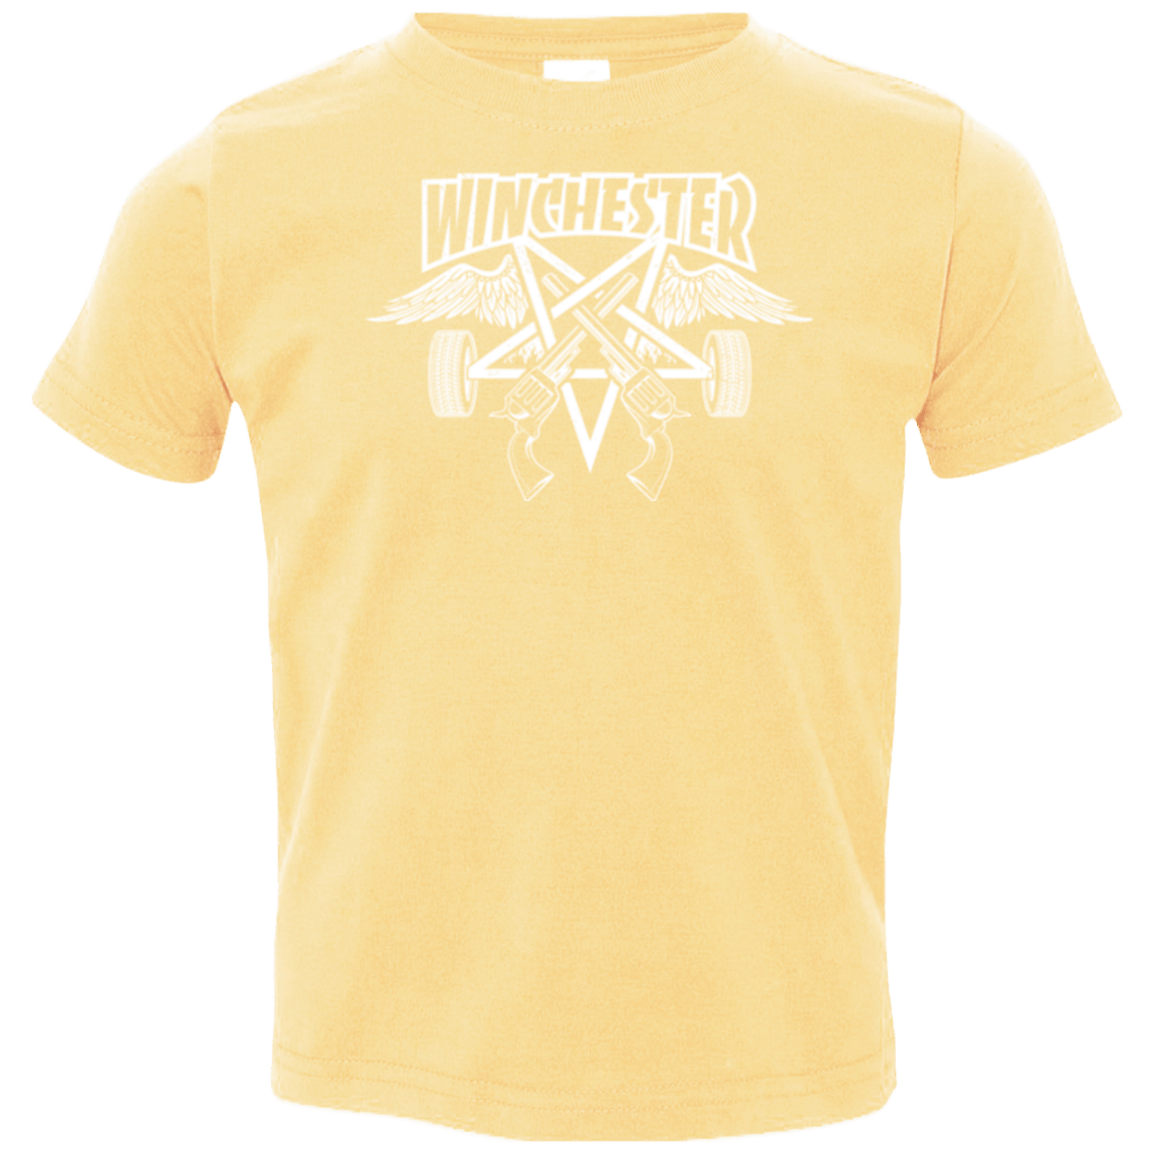 T-Shirts Butter / 2T WINCHESTER Toddler Premium T-Shirt